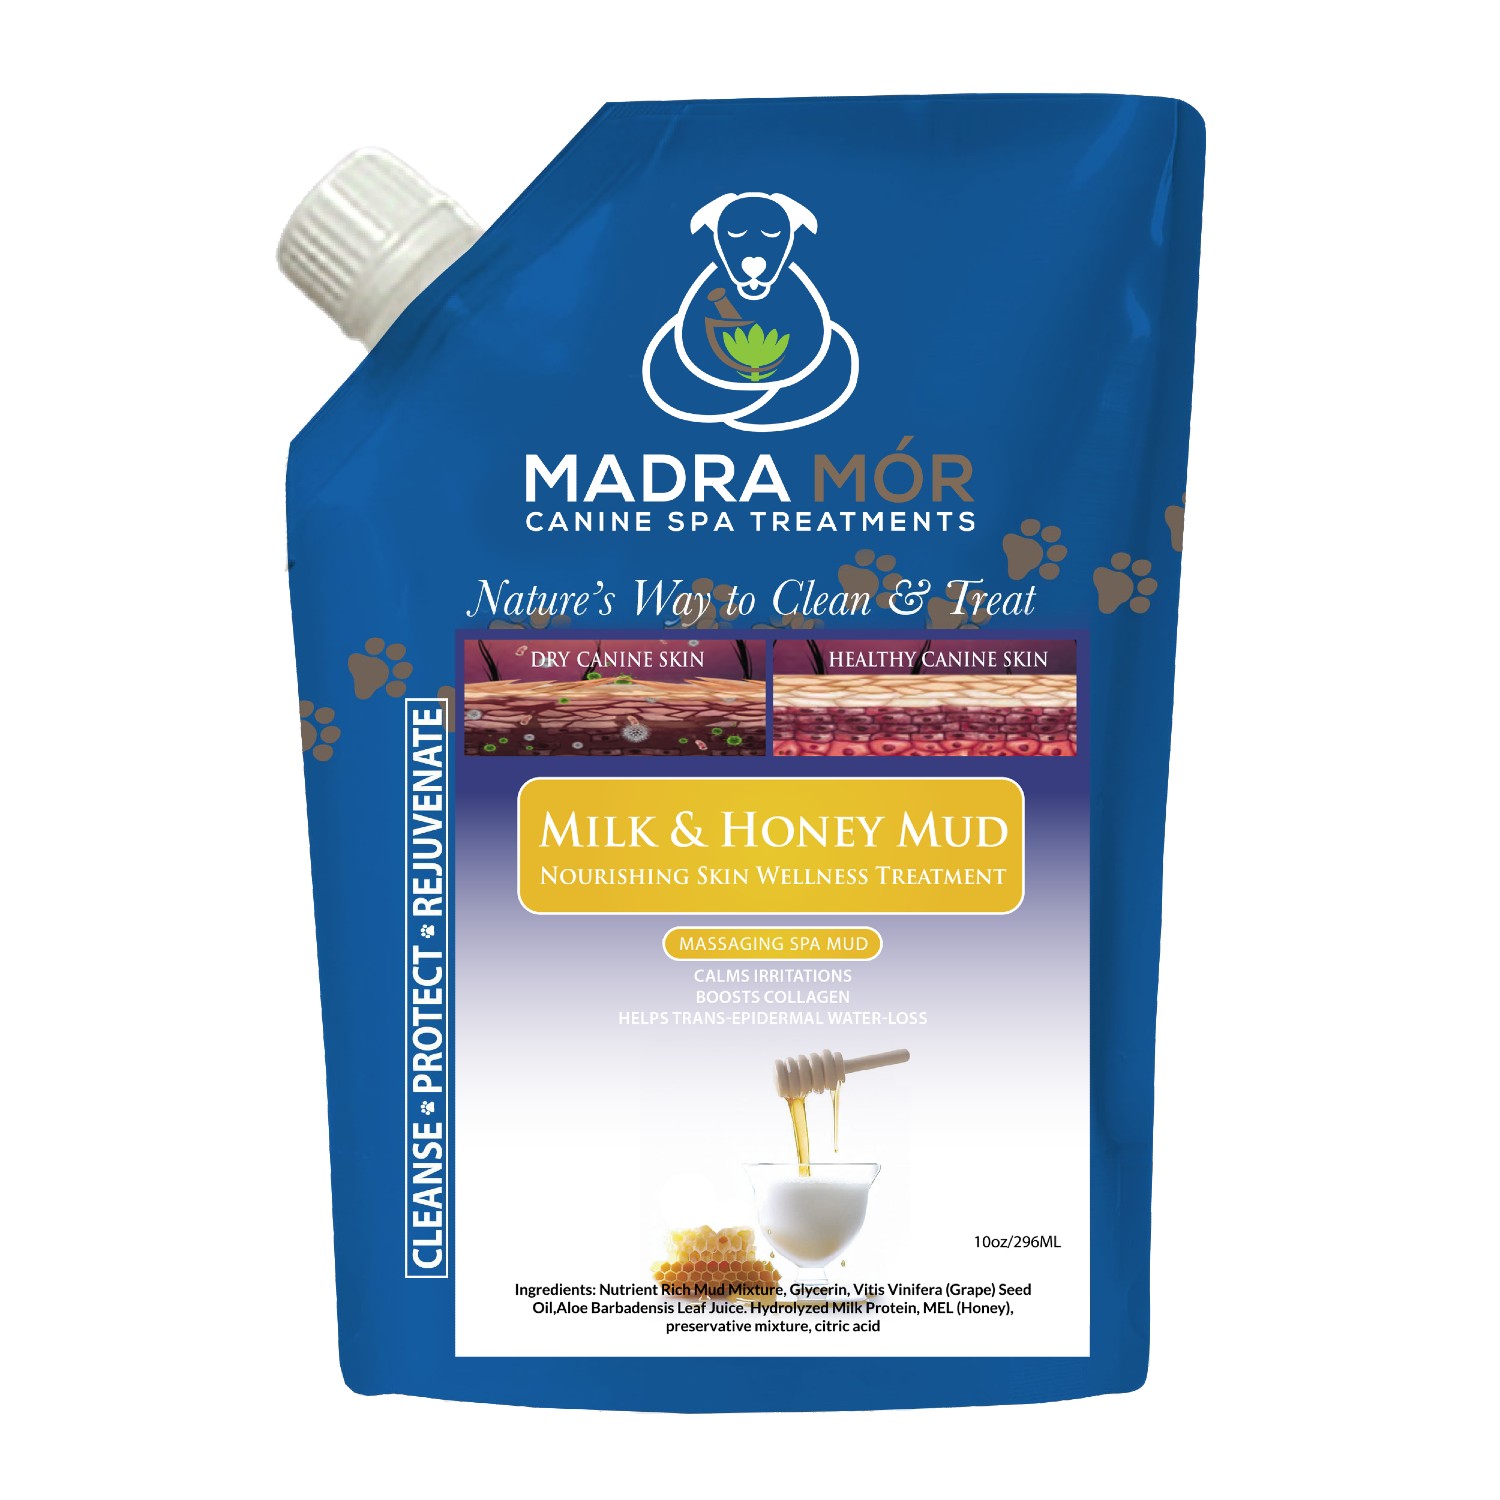 Madra Mór Canine Spa Treatments Soothing Massaging Spa Mud Dog Bath - Milk & Honey Mud